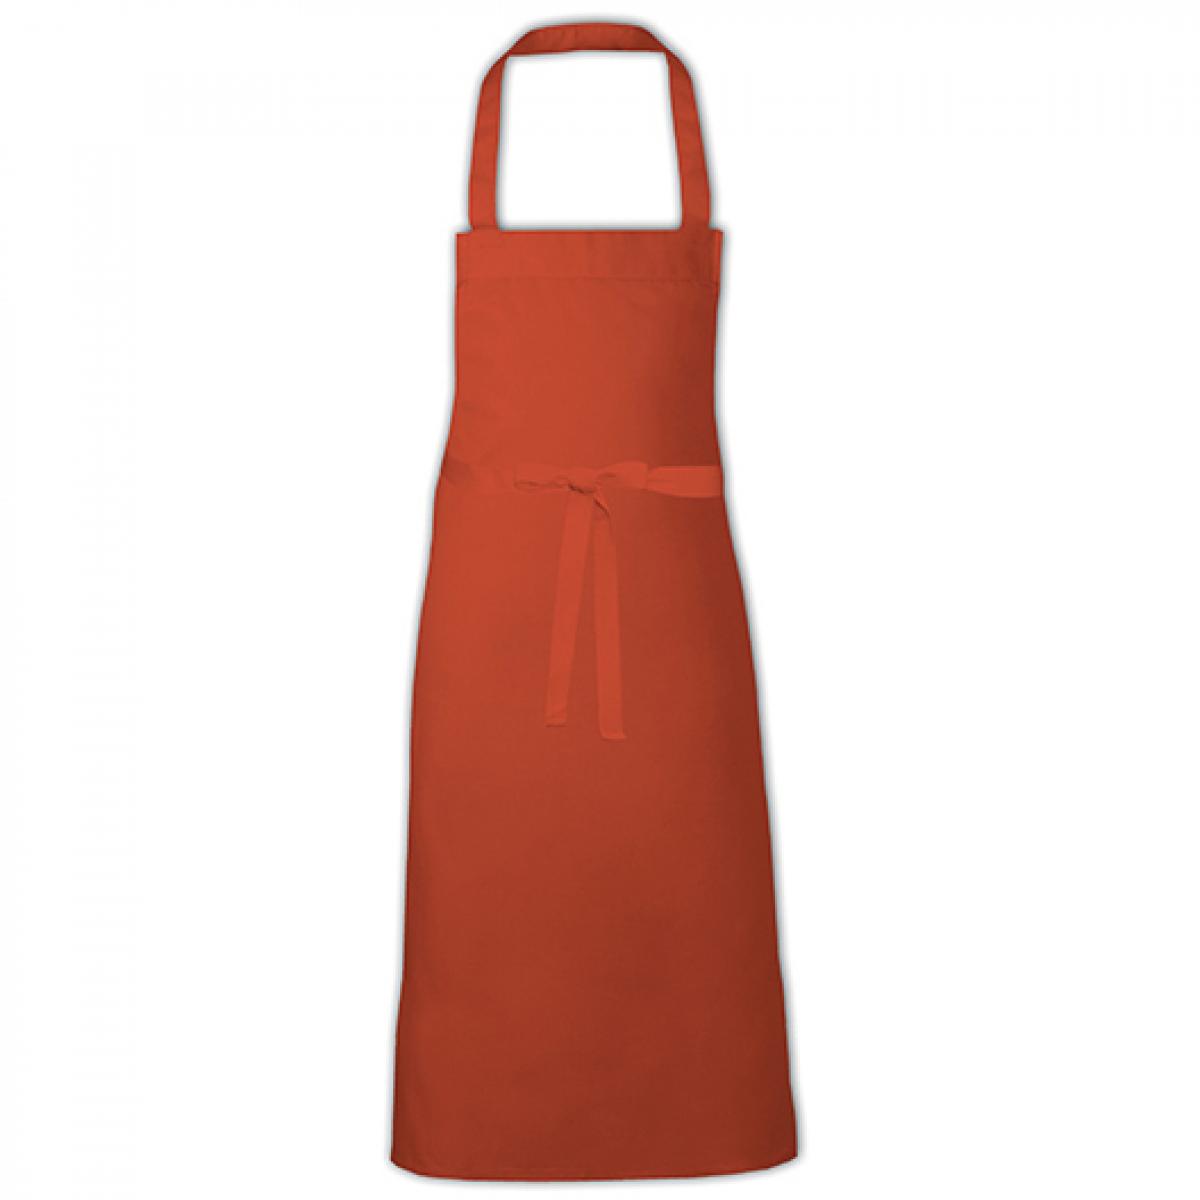 Hersteller: Link Kitchen Wear Herstellernummer: BBQ9090EU Artikelbezeichnung: Barbecue Apron XB - 90 x 90 cm - waschbar bis 60 °C Farbe: Orange (ca. Pantone 1655)